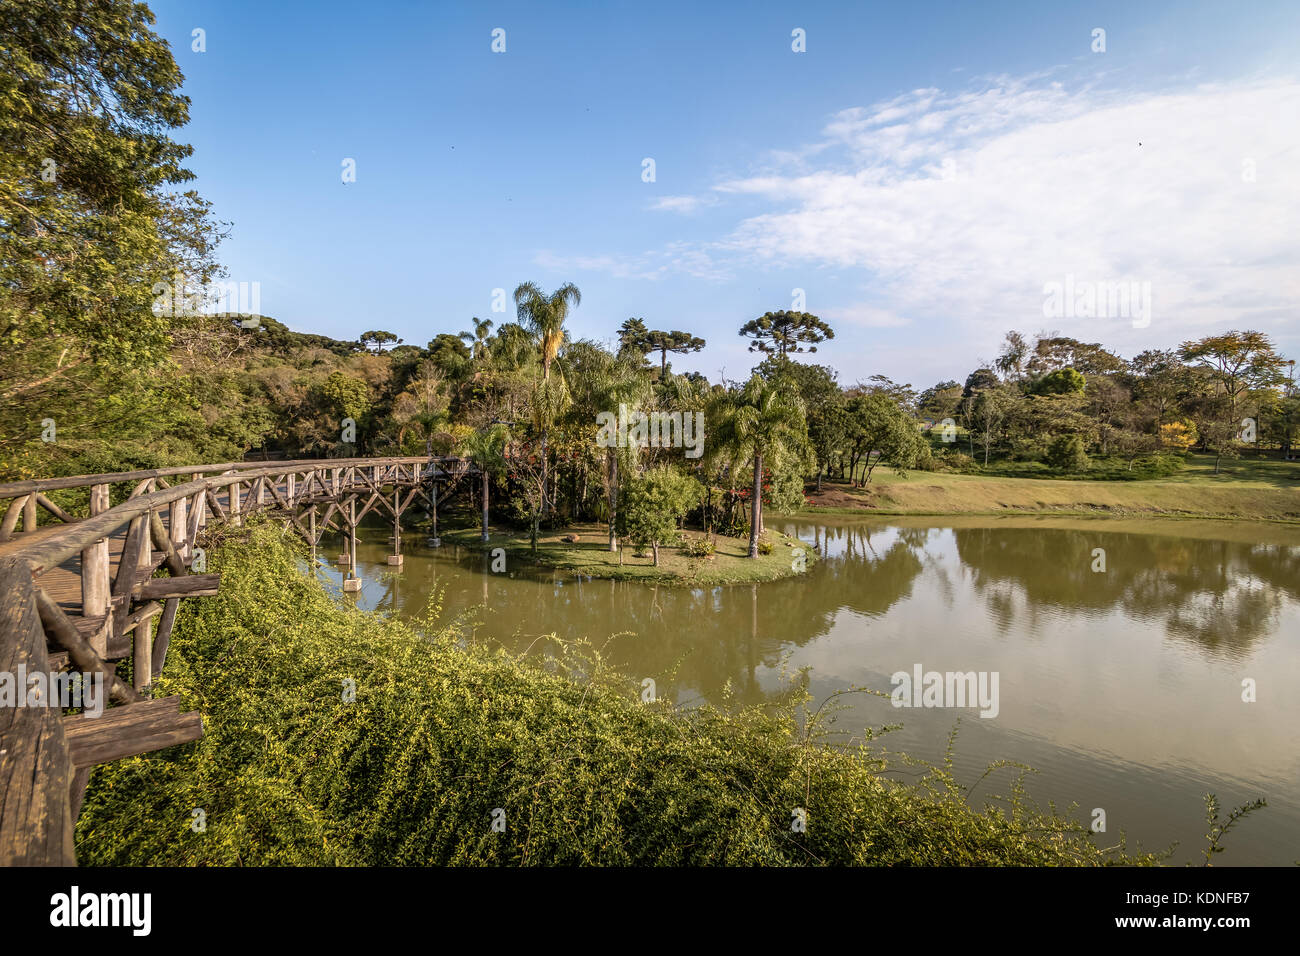 Lac au jardin botanique de Curitiba - Curitiba, Parana, Brésil Banque D'Images